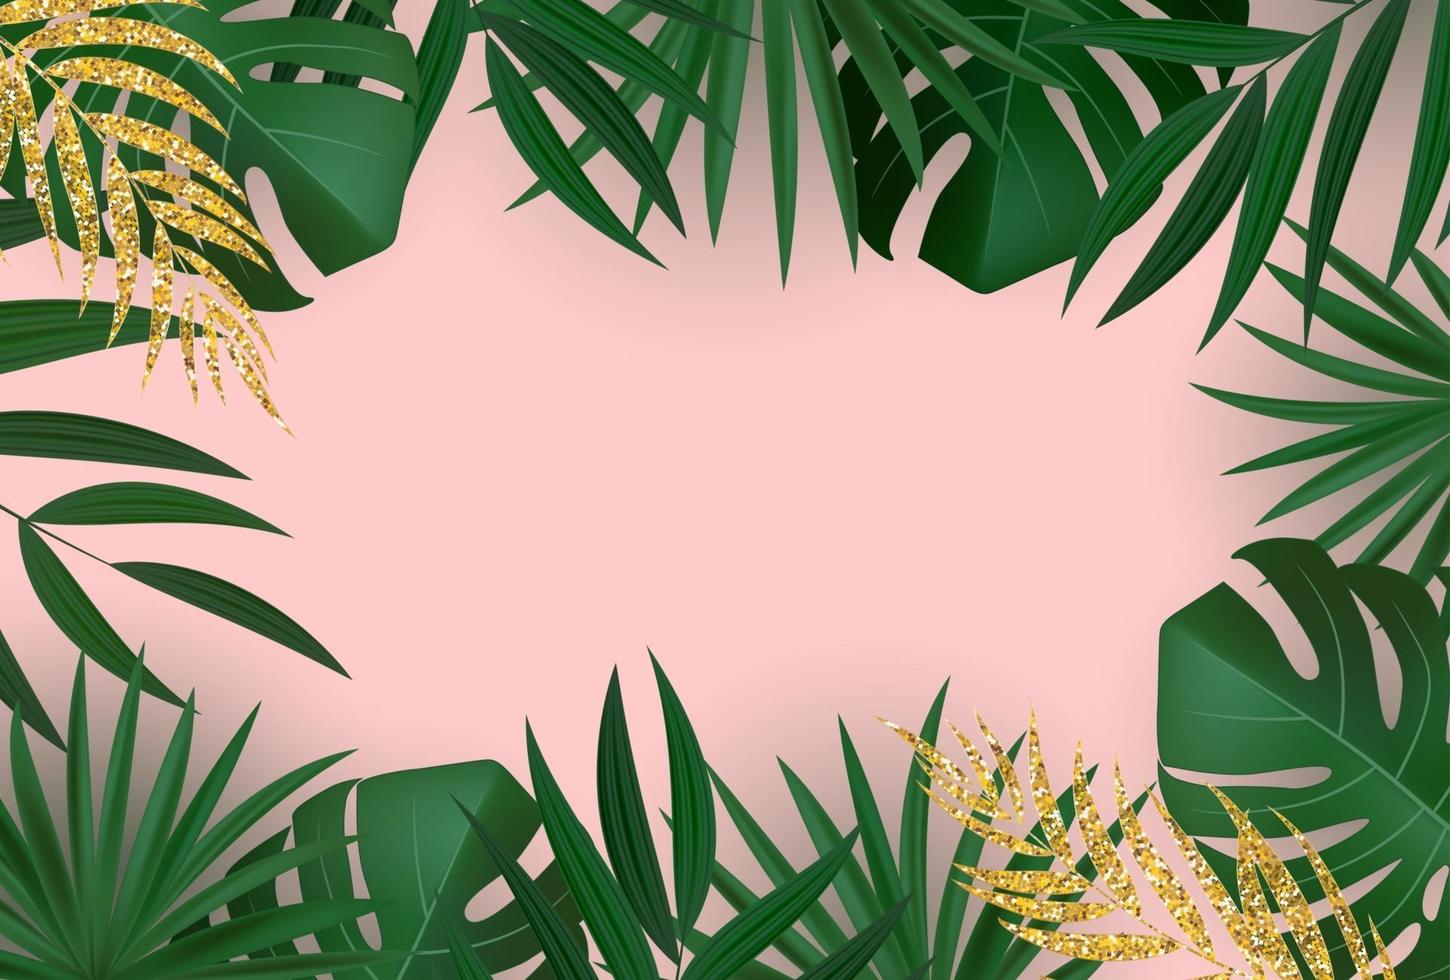 fundo tropical em folha de palmeira verde e dourada realista natural. ilustração vetorial eps10 vetor